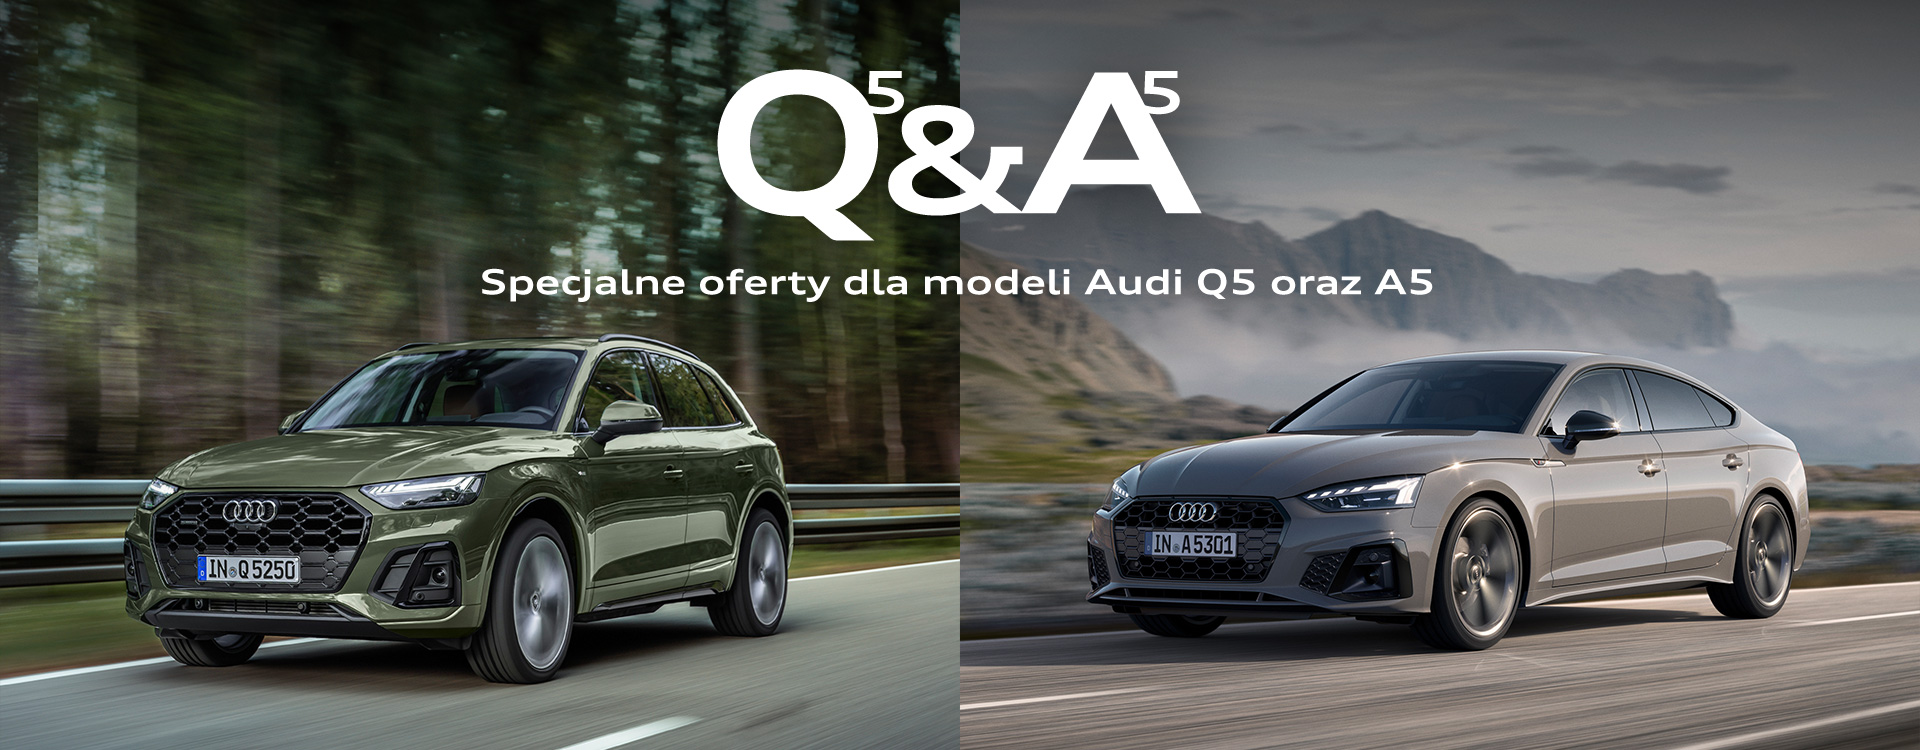 Specjalne oferty dla modeli Audi Q5 oraz A5